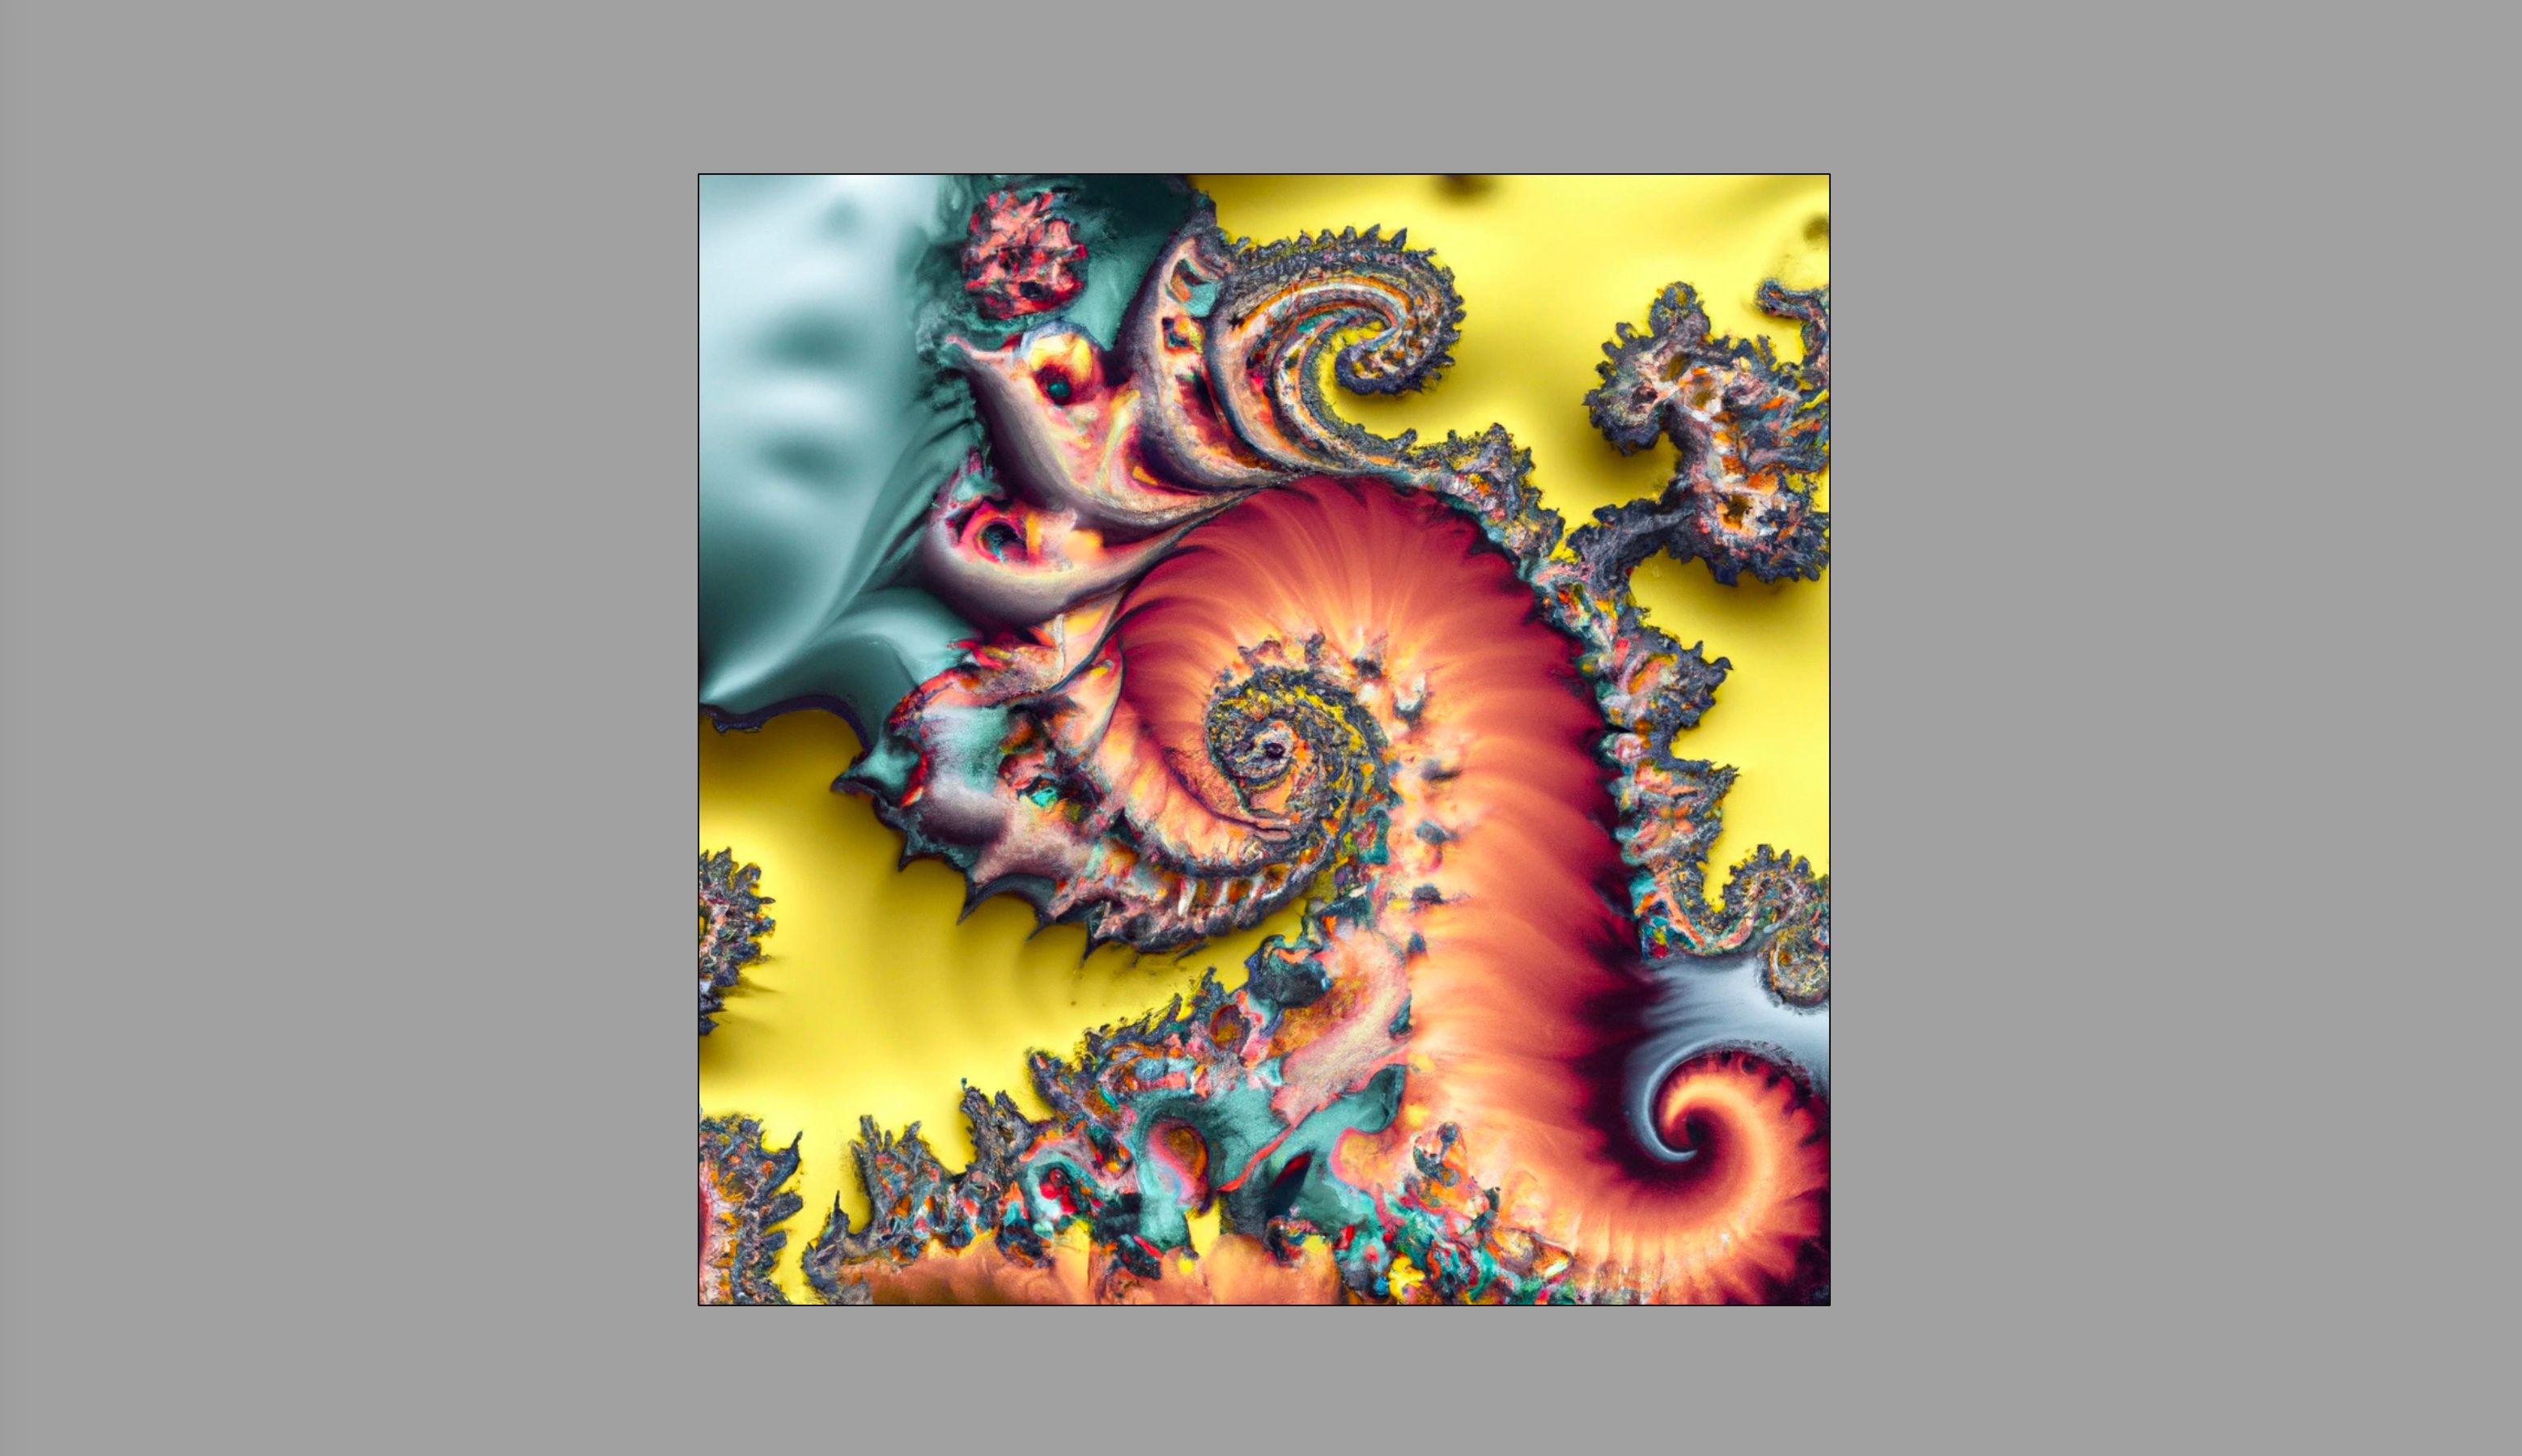 Imagem gerada por IA de arte fractal feita usando Dall-E